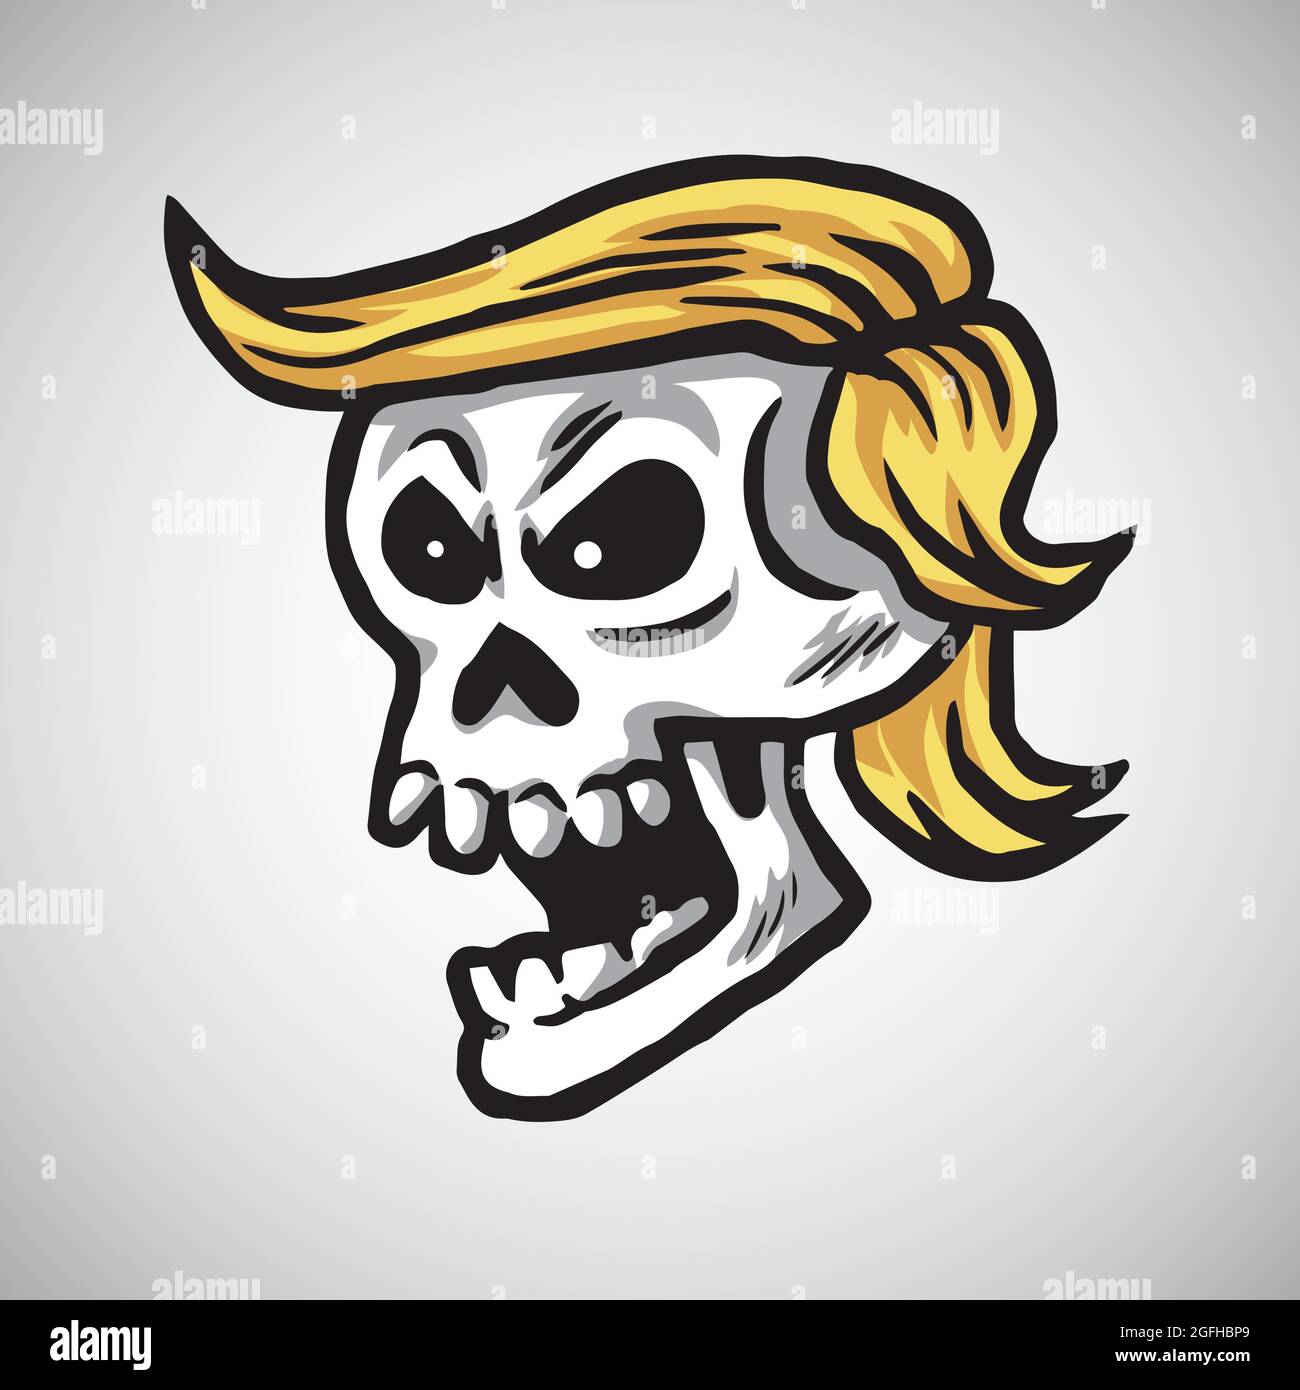 Donald Trump Skull Cartoon Vector Illustration. November 19, 2017 Stock Vector